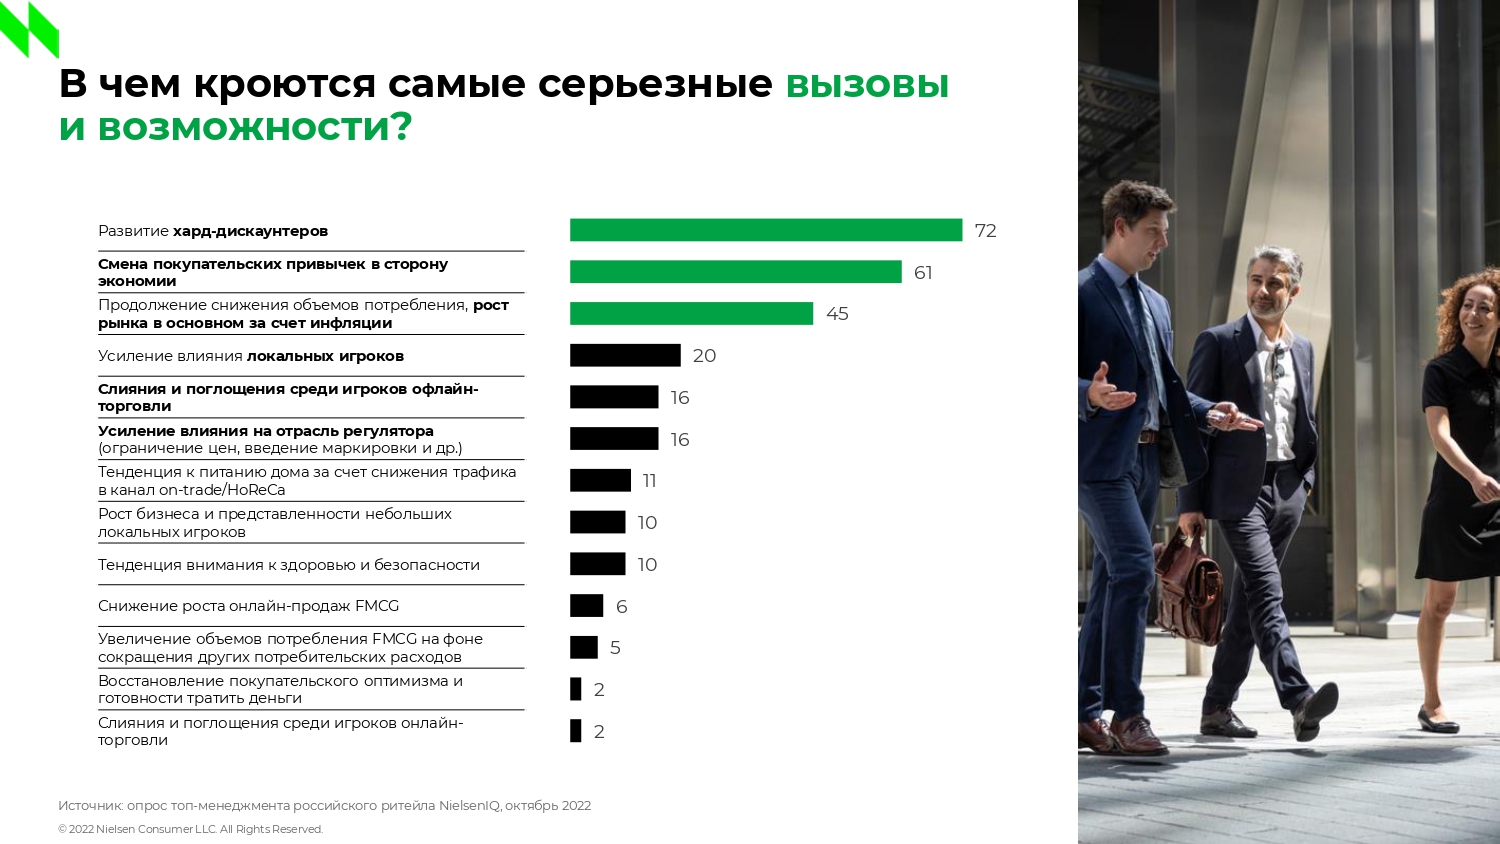 Ожидания относительно динамики бизнеса среди руководителей российского ритейла и FMCG-производителей за год снизились | Анализ рынков